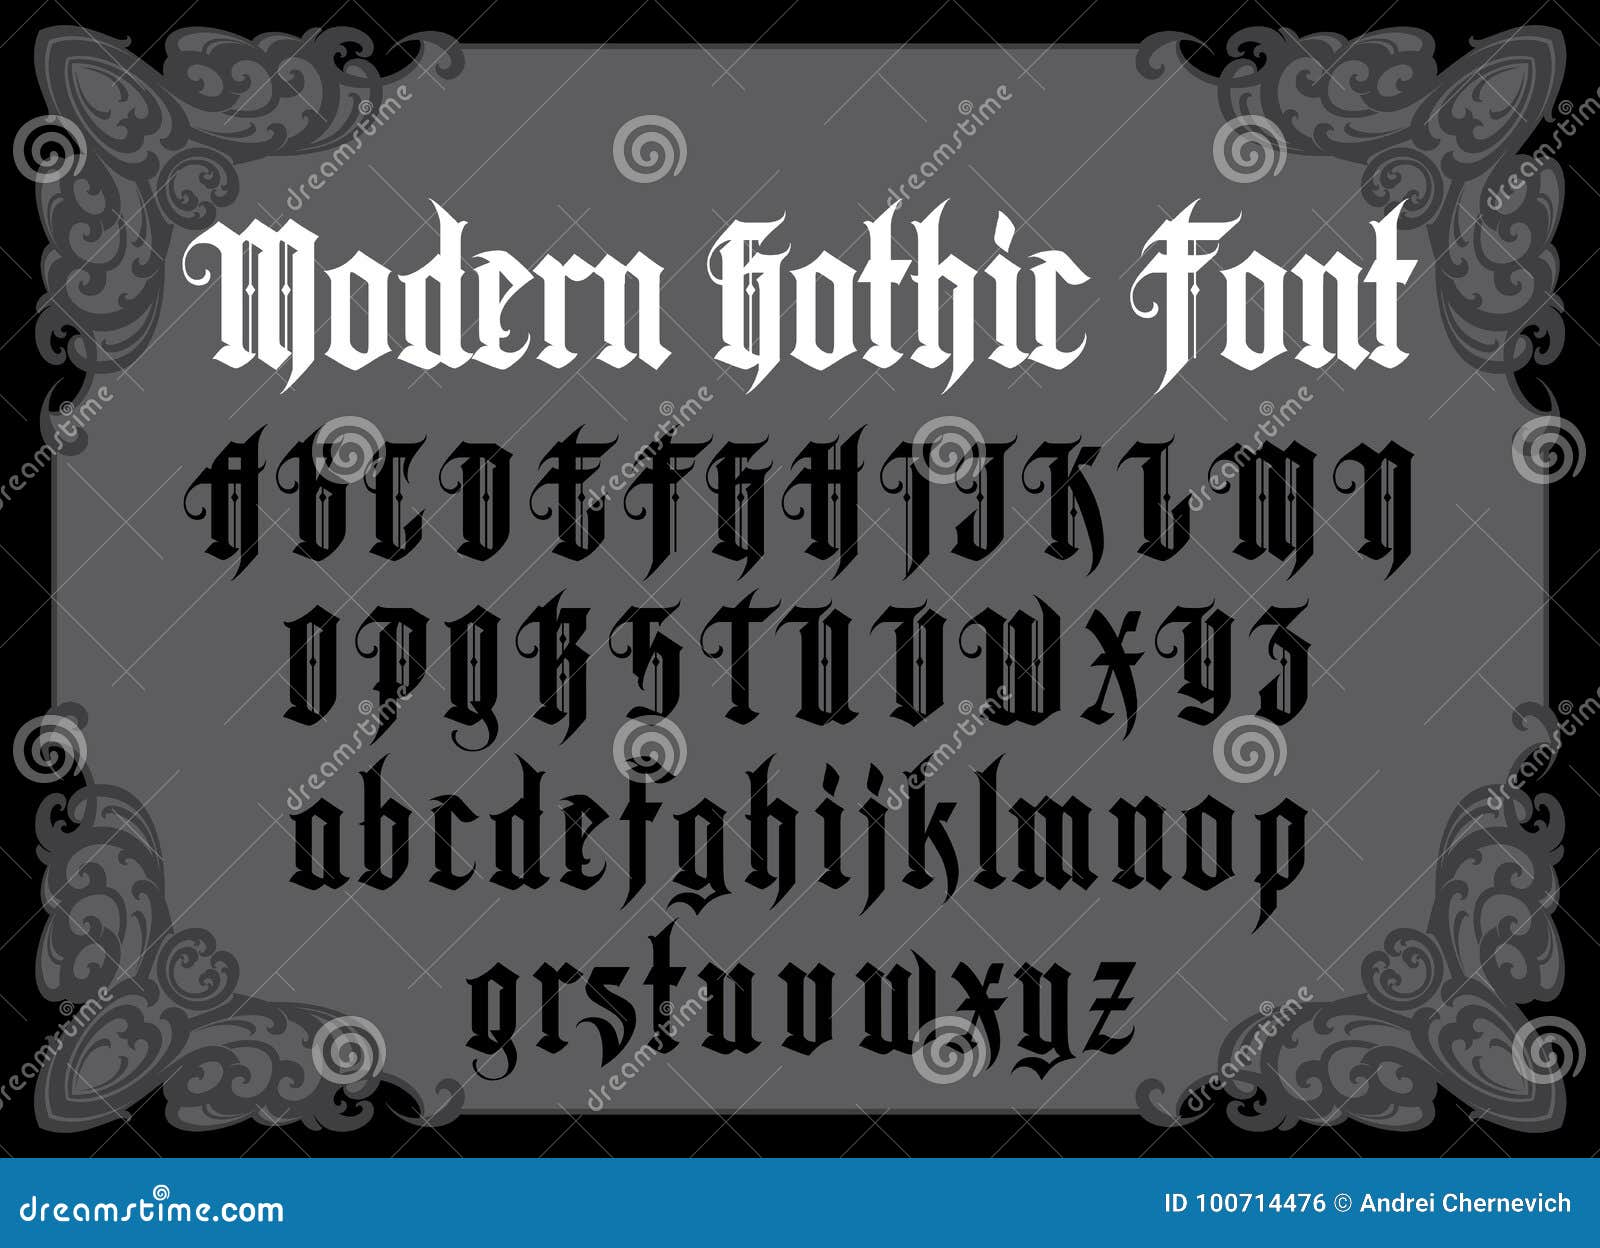 gothic fonts az